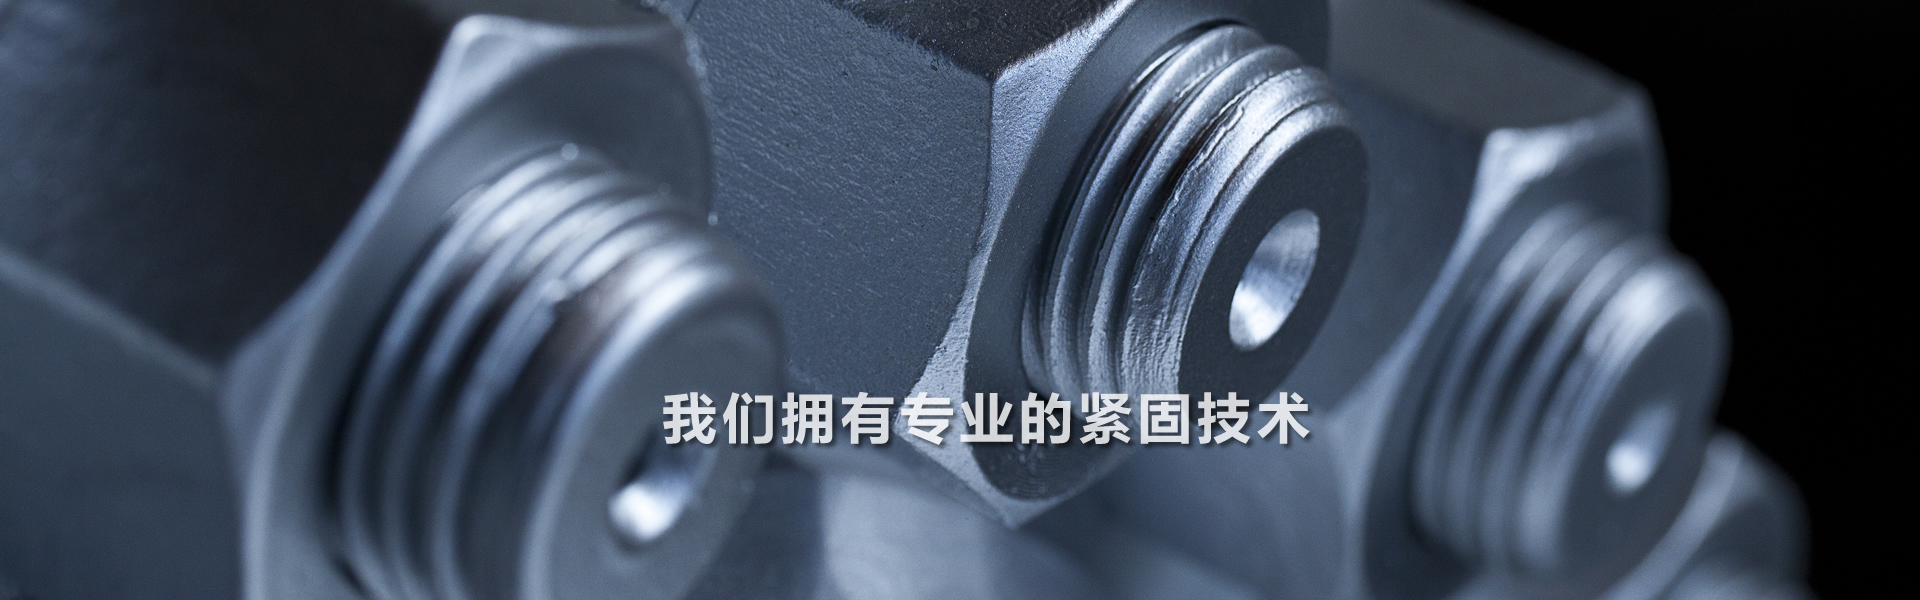 关于当前产品7026威尼斯·(中国)官方网站的成功案例等相关图片